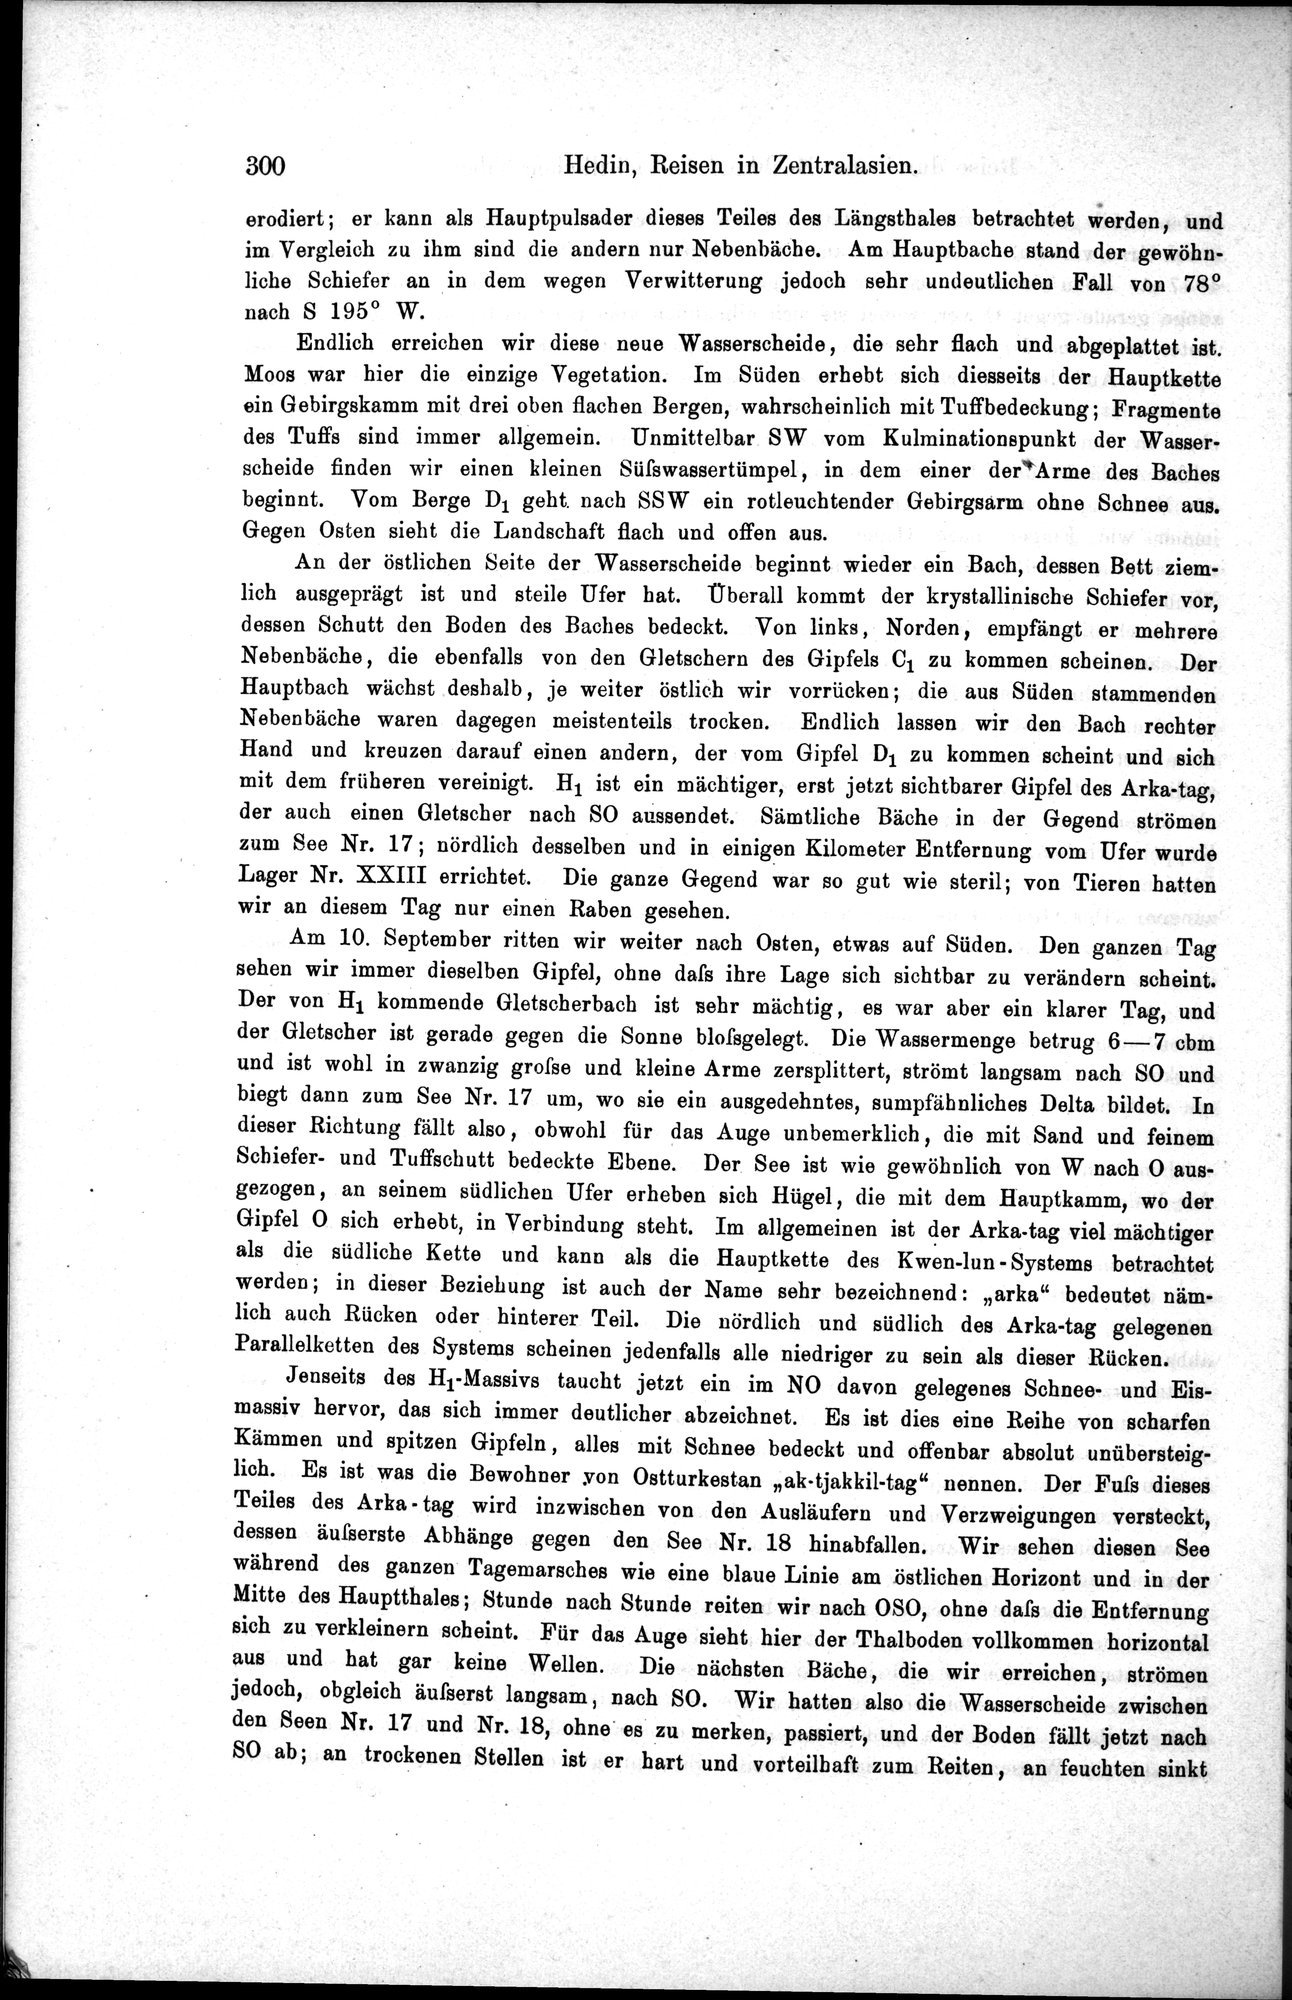 Die Geographische-Wissenschaftlichen Ergebnisse meiner Reisen in Zentralasien, 1894-1897 : vol.1 / Page 312 (Grayscale High Resolution Image)